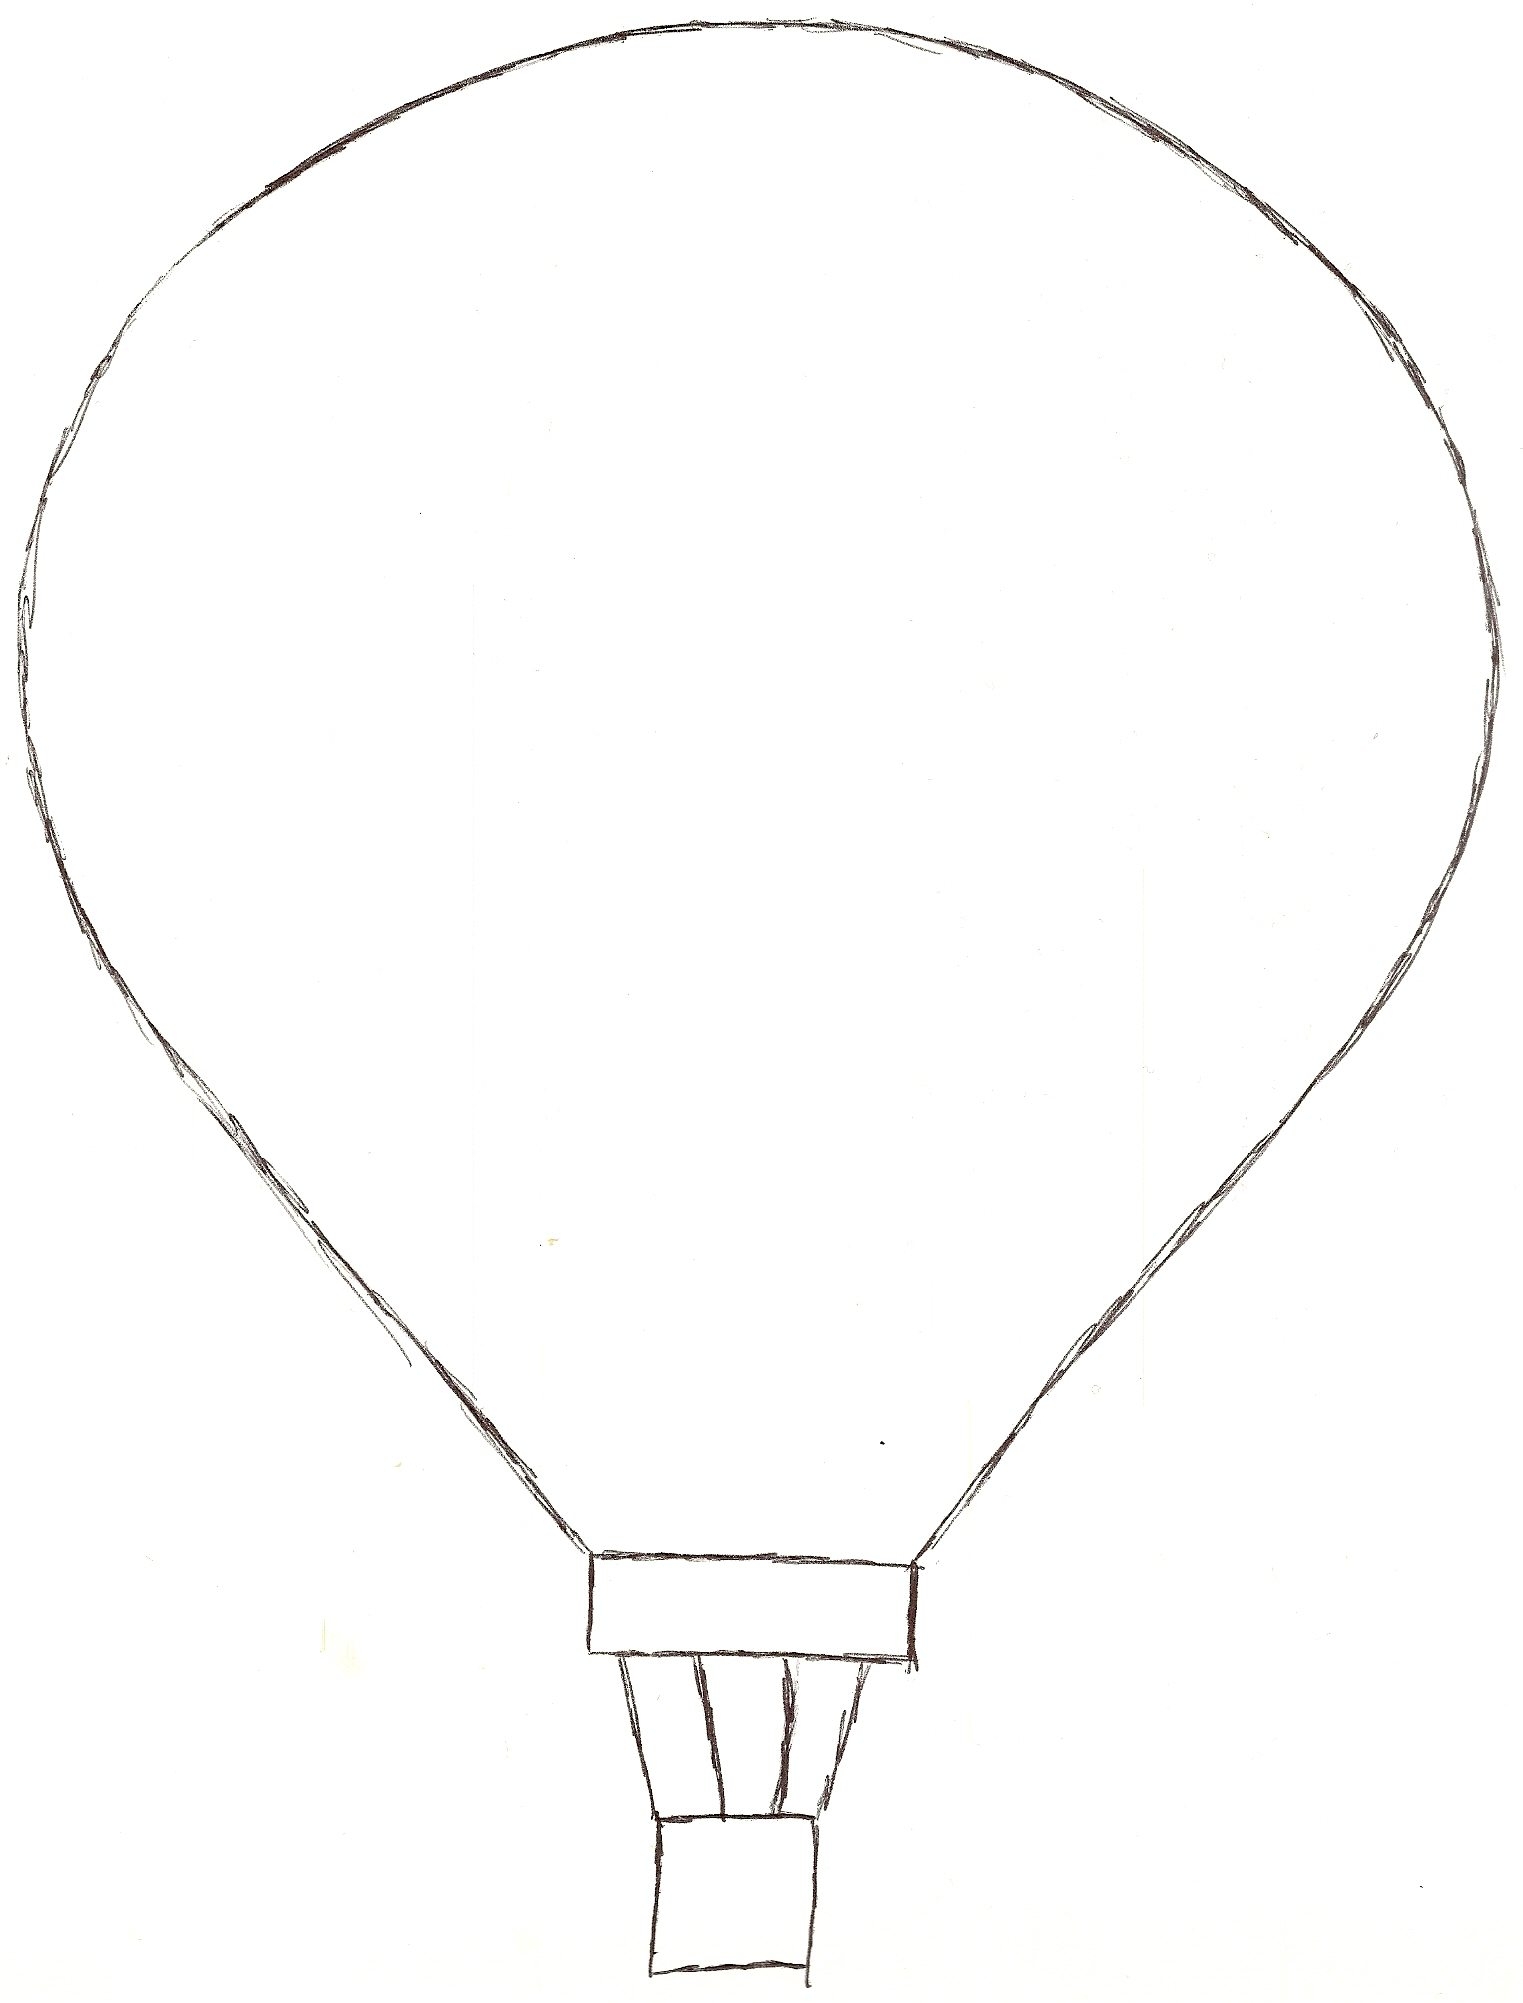 Hot Air Balloon Pencil Drawing at GetDrawings Free download